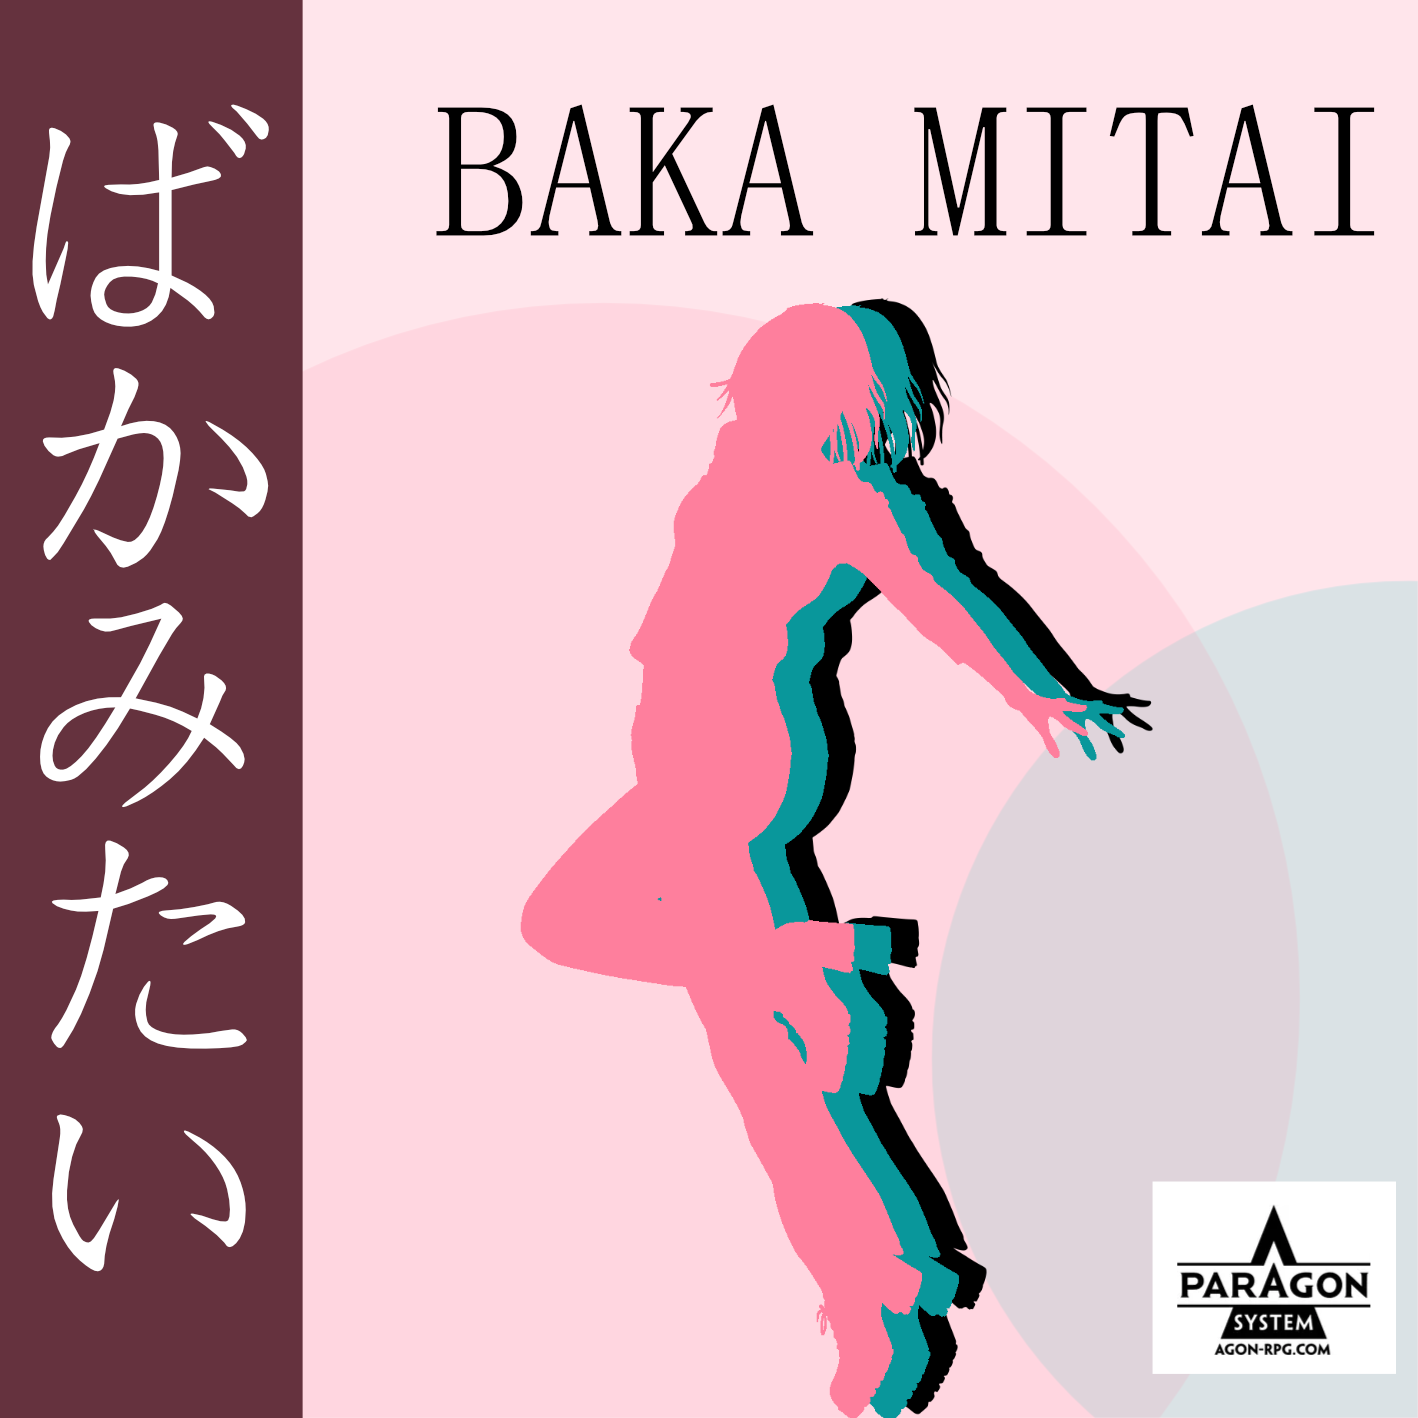 Custom - Baka Mitai Del karaoke de Yakuza #oroinicial #mylonline